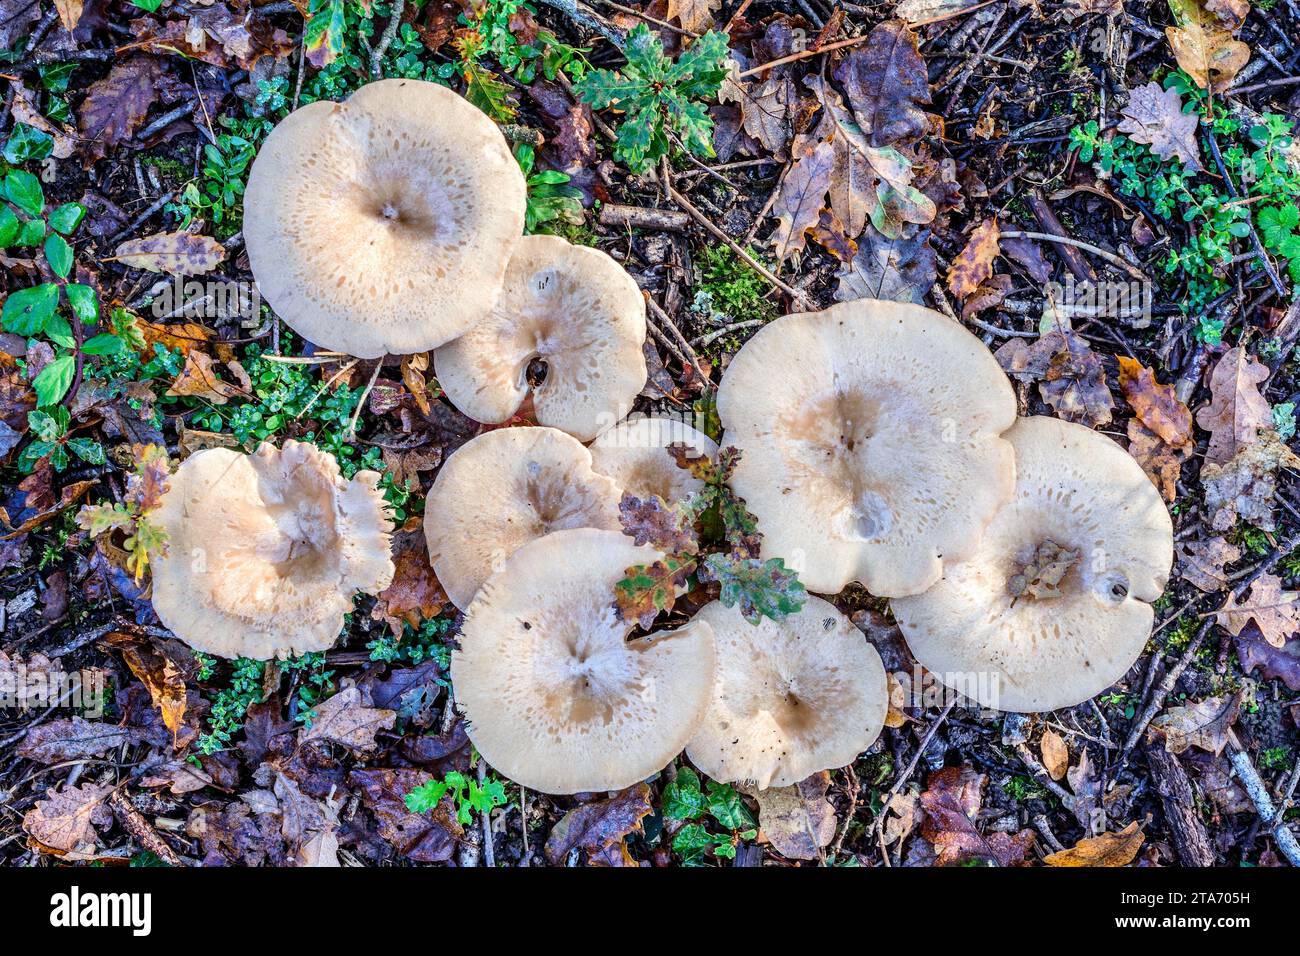 Ungenießbar (Death Cap / Amanita ?) Pilze mit Eichenblättern, wachsen auf dem Boden von Mischwäldern - Zentralfrankreich. Stockfoto